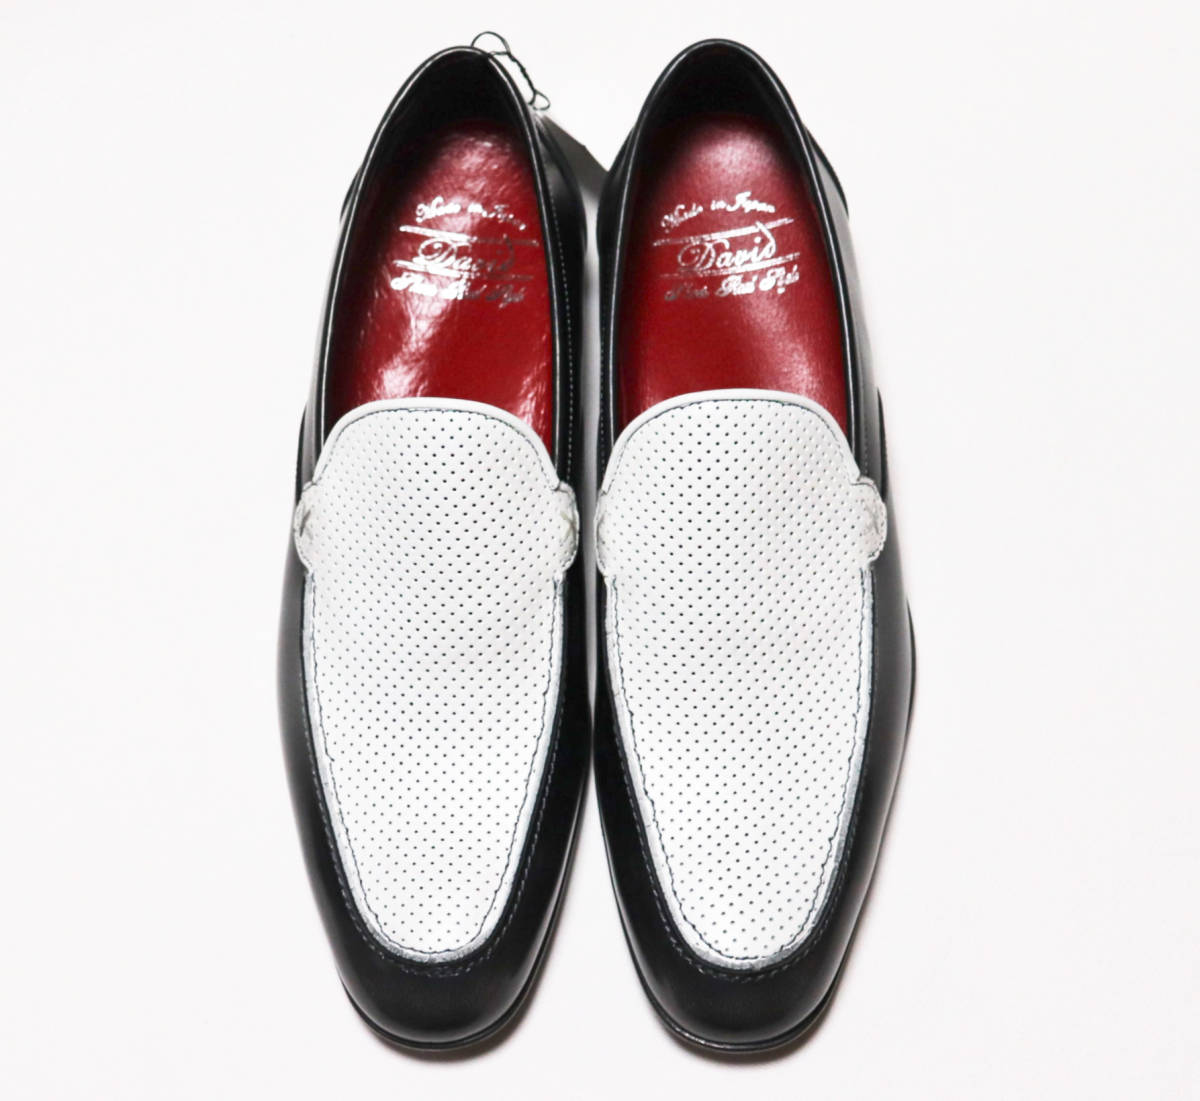 {David David } с ящиком новый товар сделано в Японии перфорированная кожа обувь для вождения Loafer bijikaji26.5cm A8578